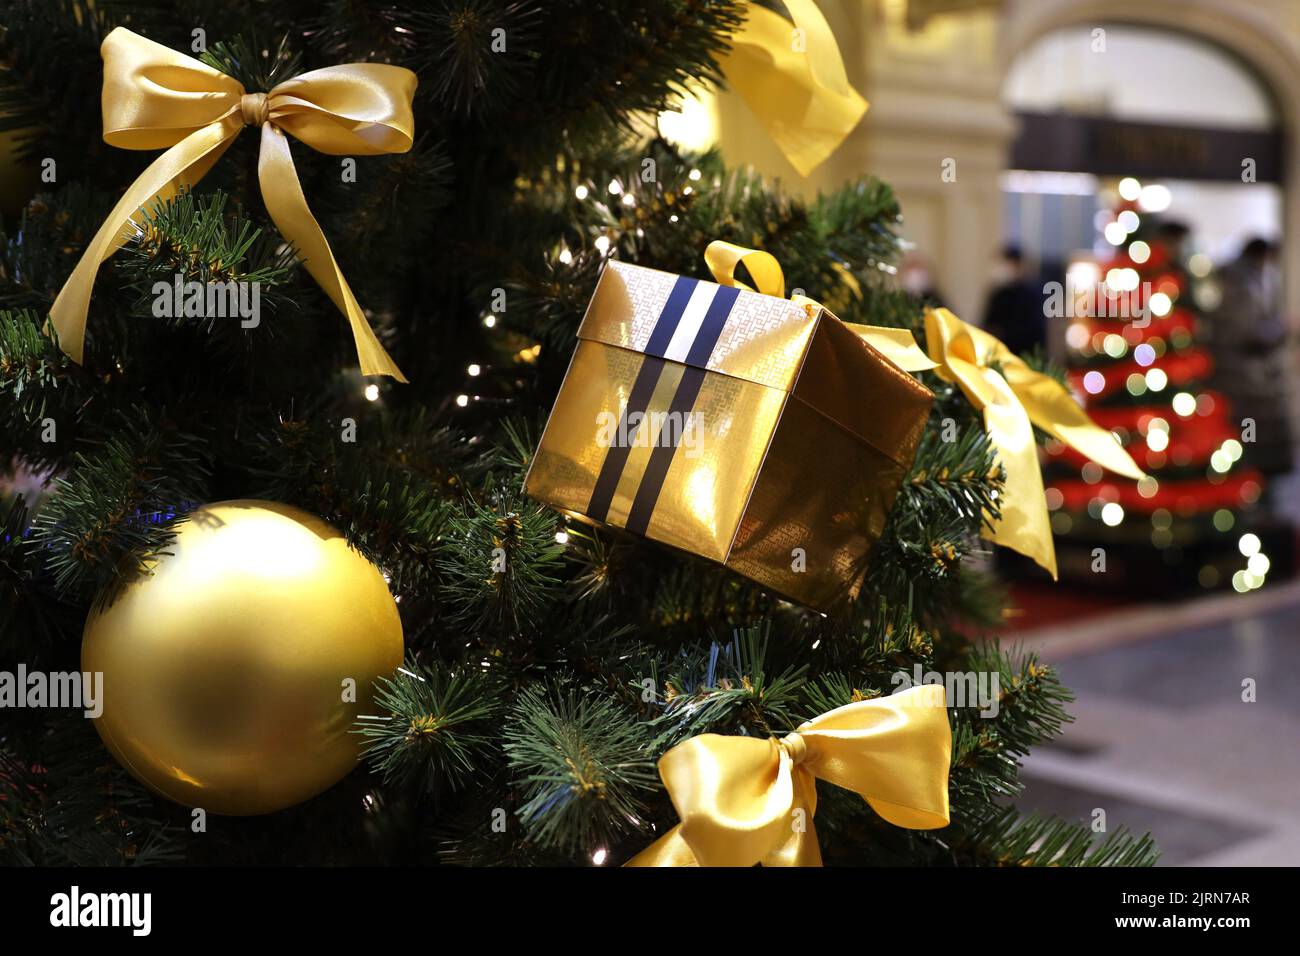 Árbol de Navidad con juguetes dorados y caja de regalo en un centro comercial sobre el fondo de luces festivas borrosas. Decoración de Año Nuevo, vacaciones de invierno Foto de stock